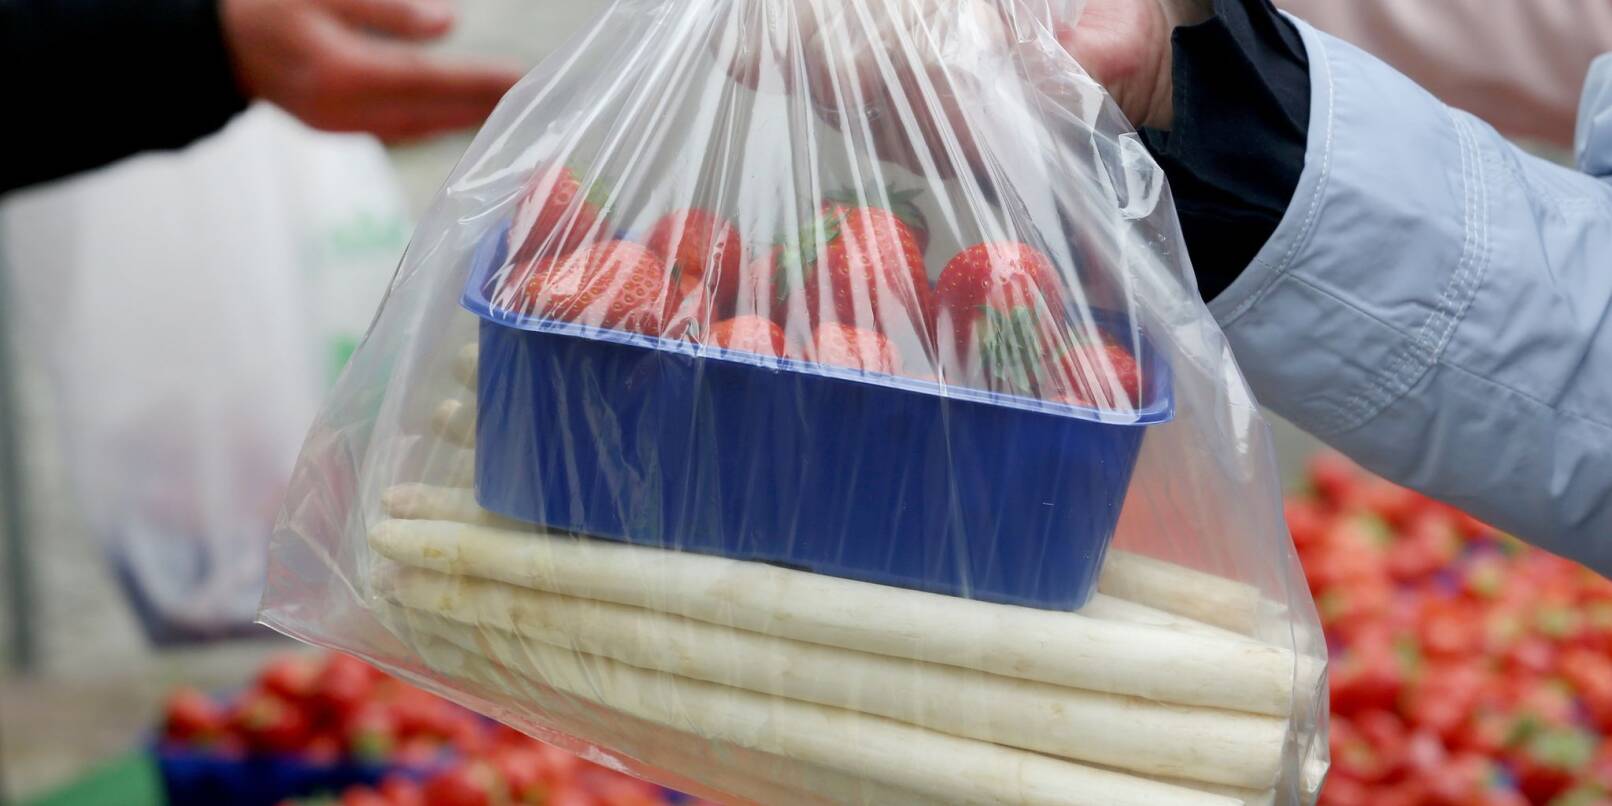 Erdbeeren und Spargel werden gern gemeinsam gekauft.